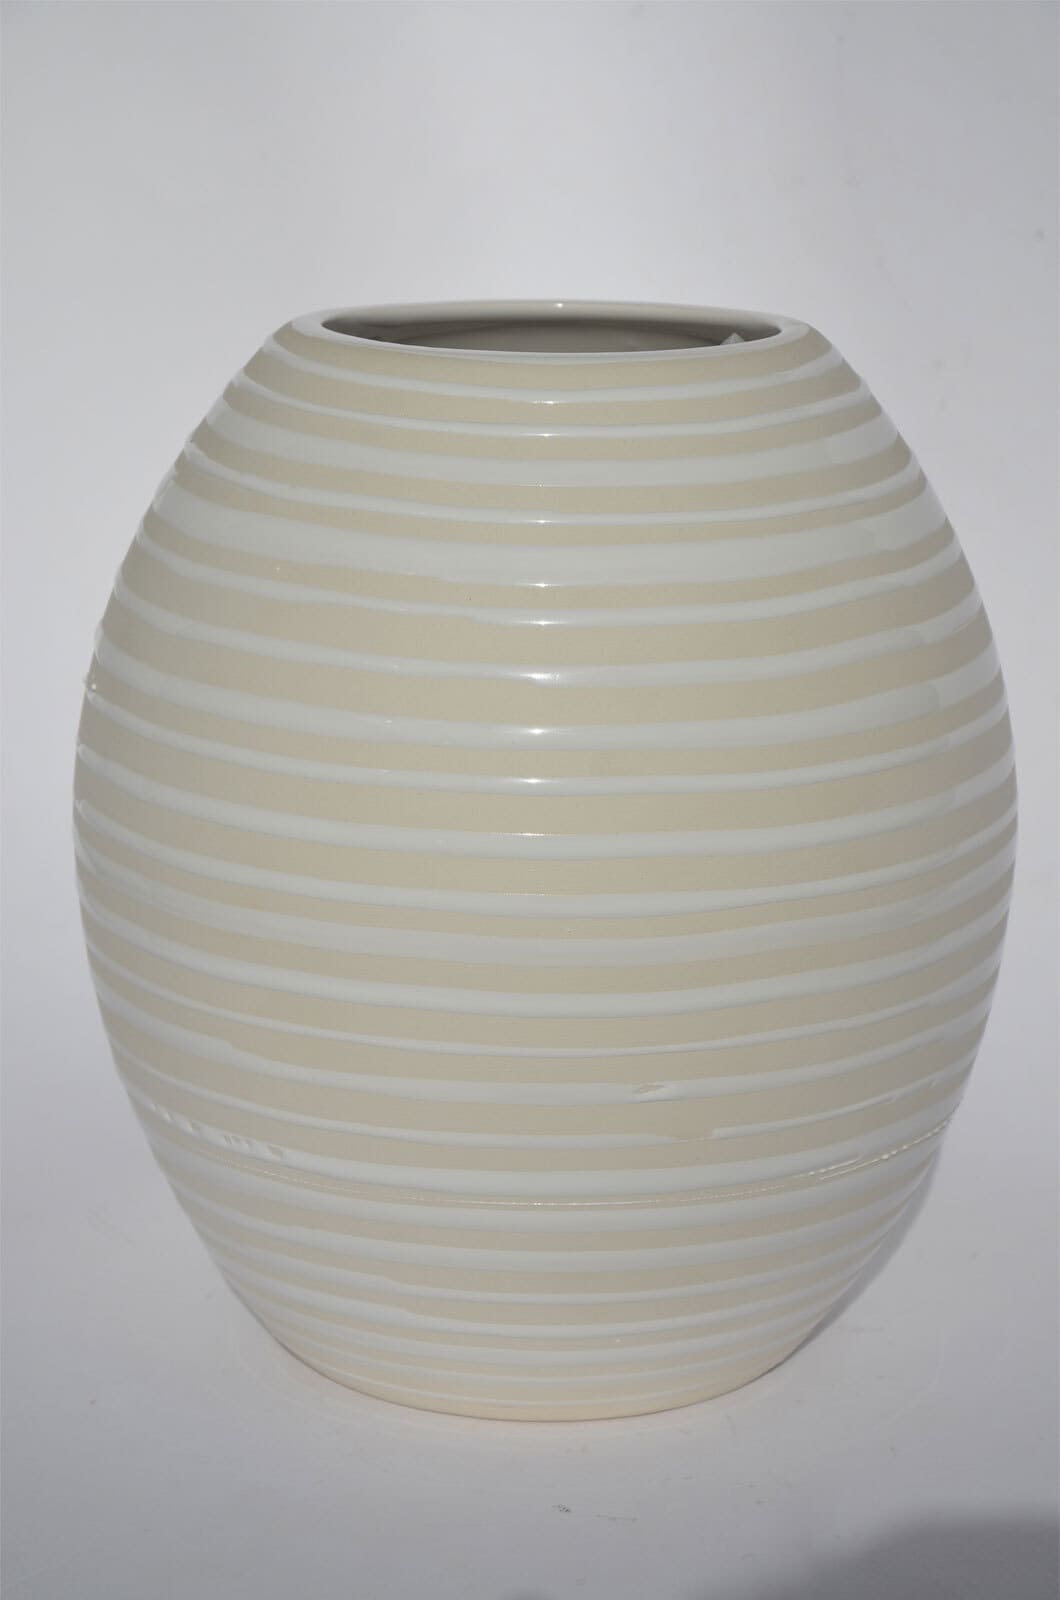 Bauchige Vase aus Keramik H 21 /Ø 18 STRIPES Weiß gestreift